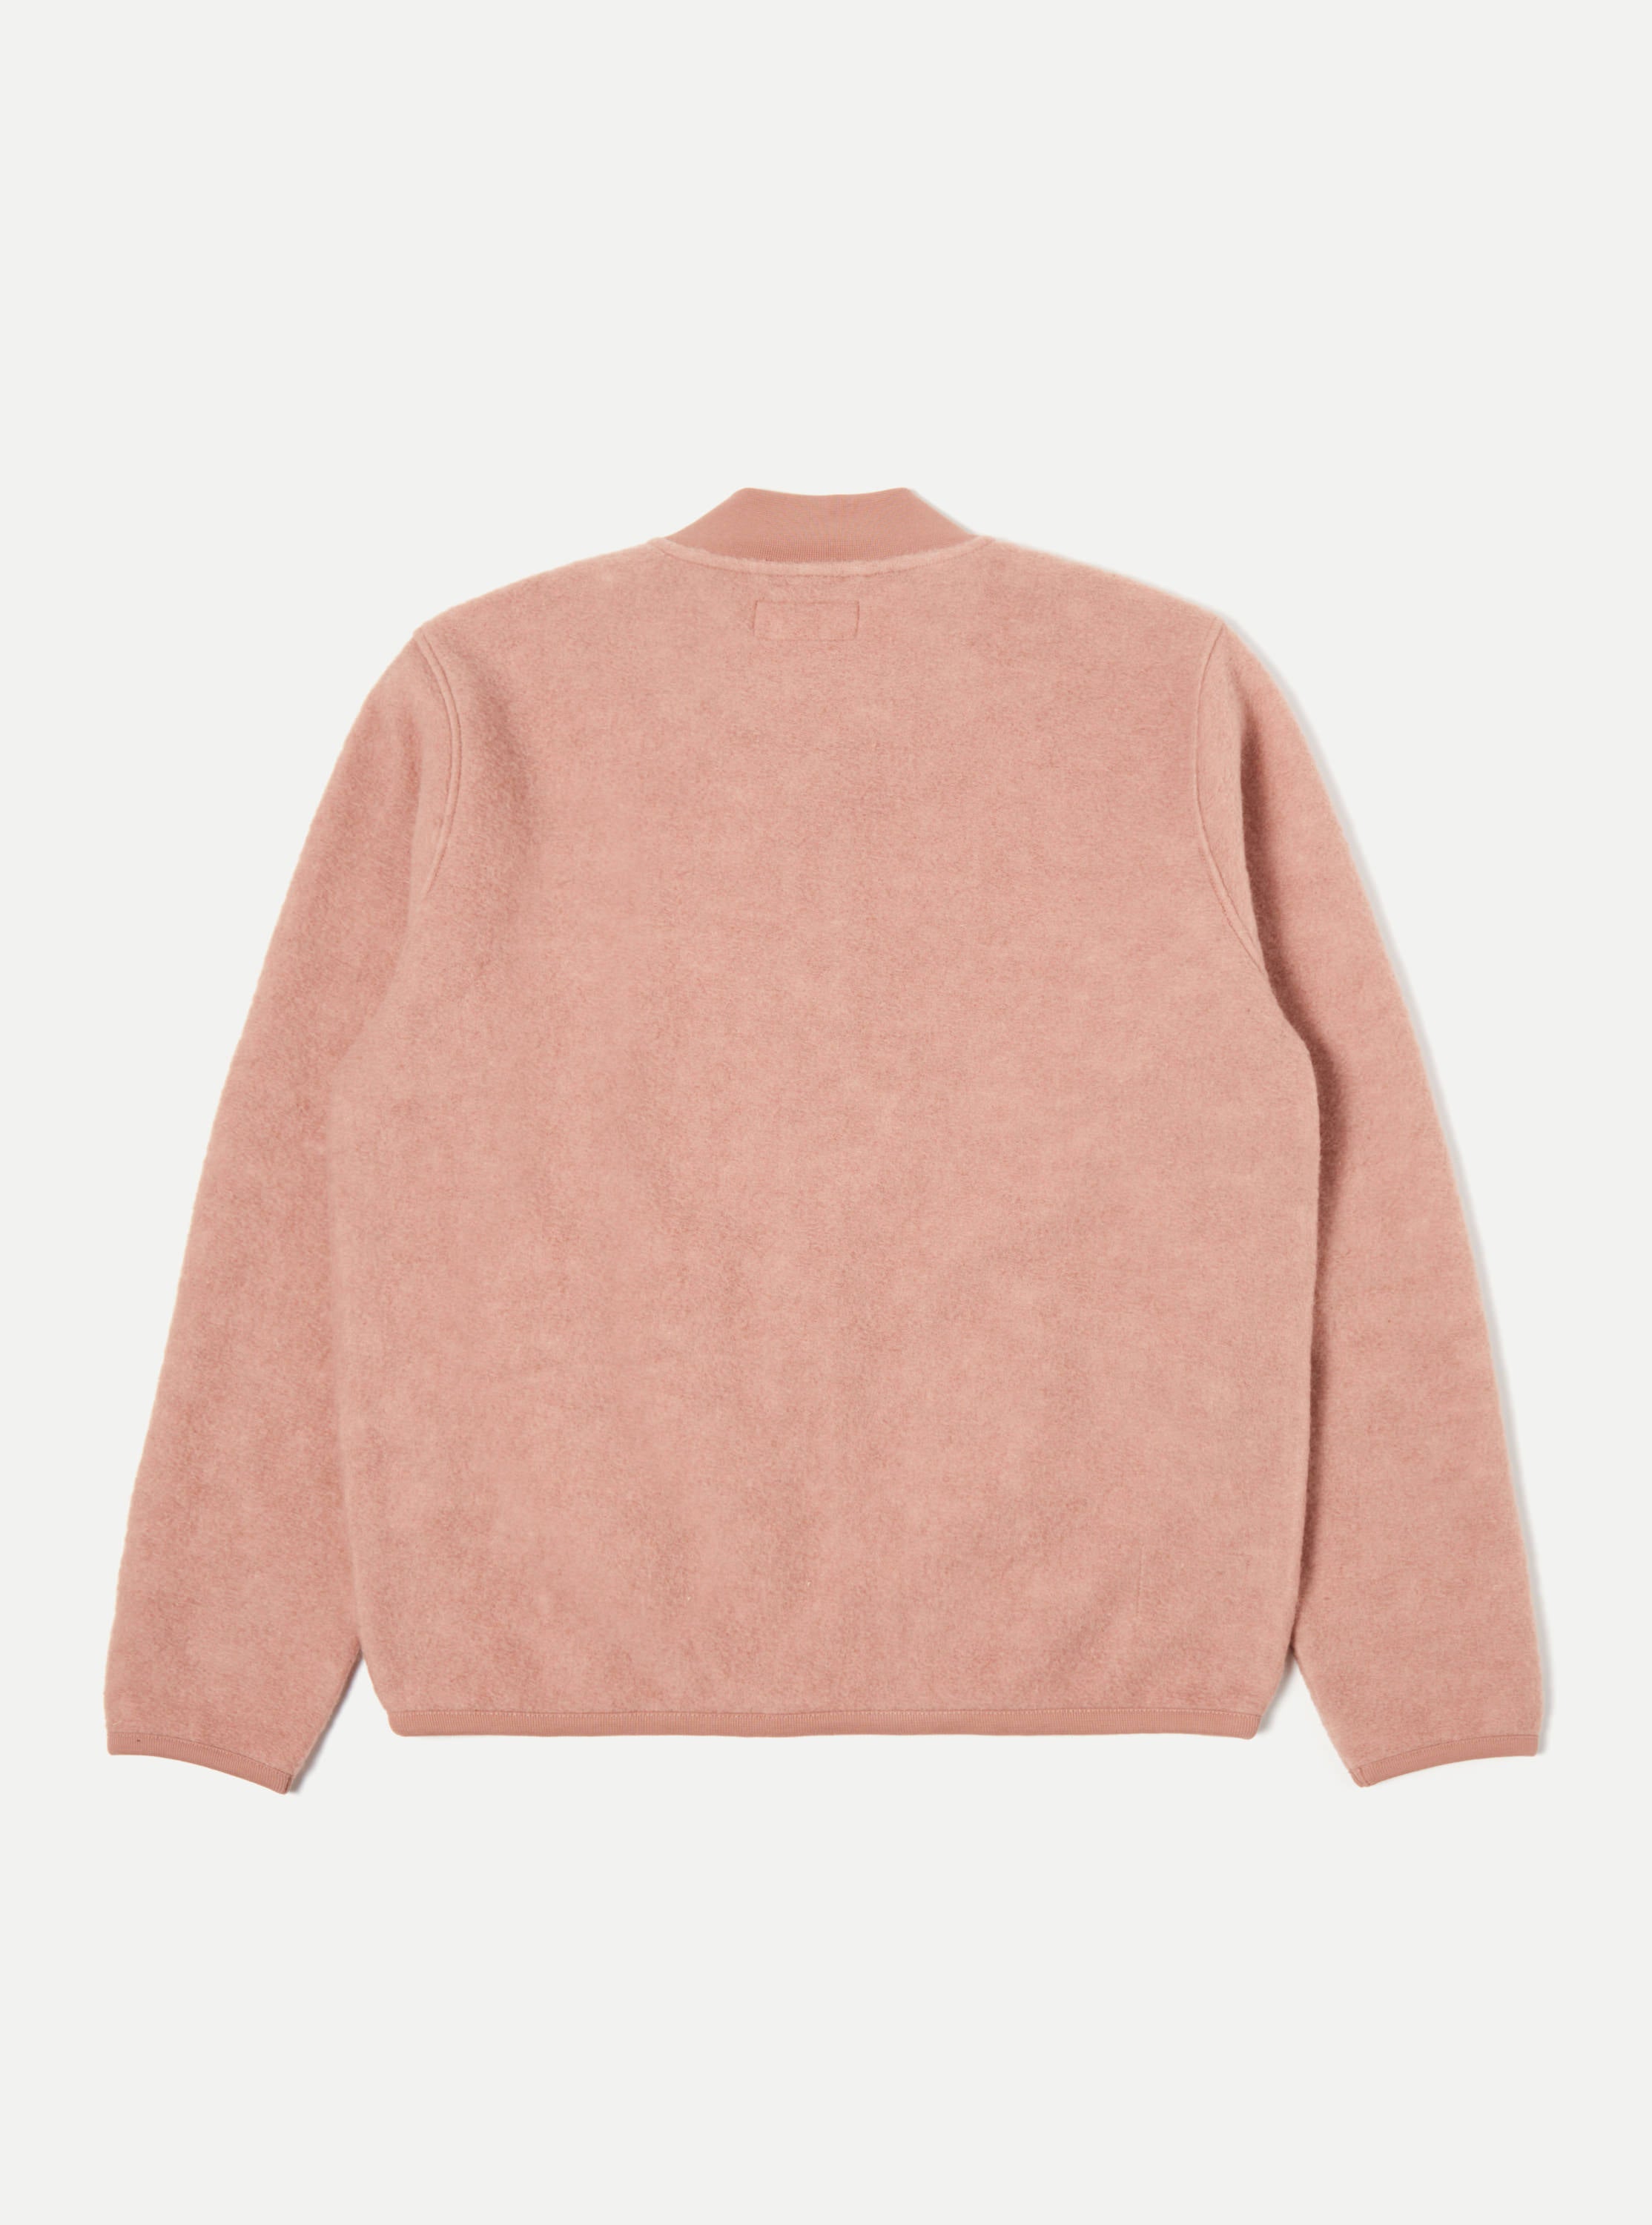 Universal Works Zip Bomber in Pink Wool Fleece